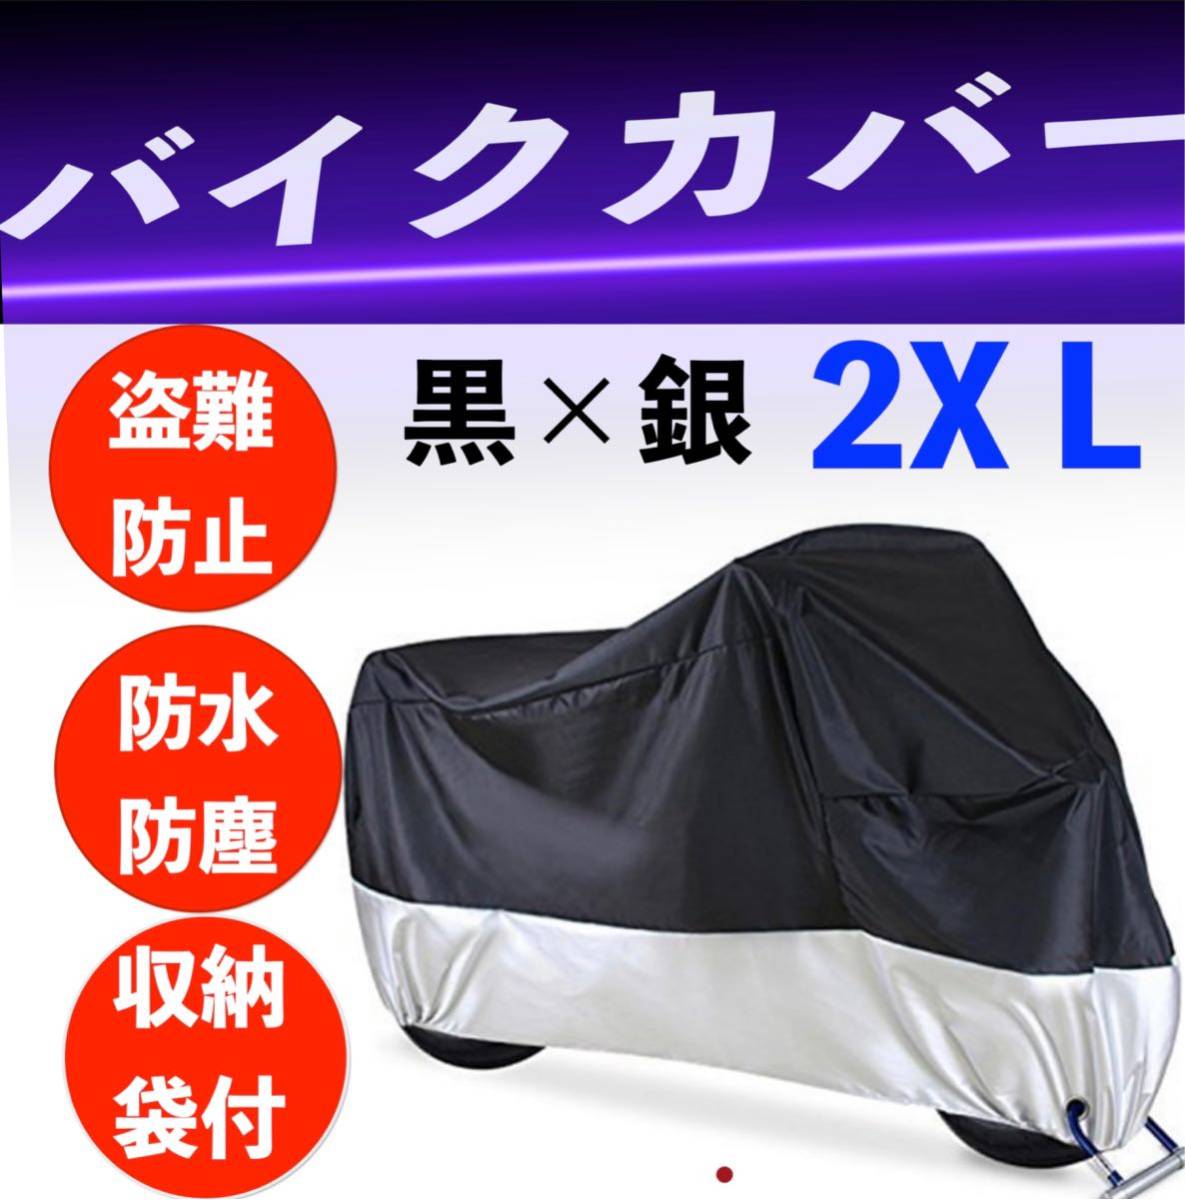 バイクカバー 黒 銀 耐水 耐熱 防雪 厚手 L XL 2XL 3XL 通販